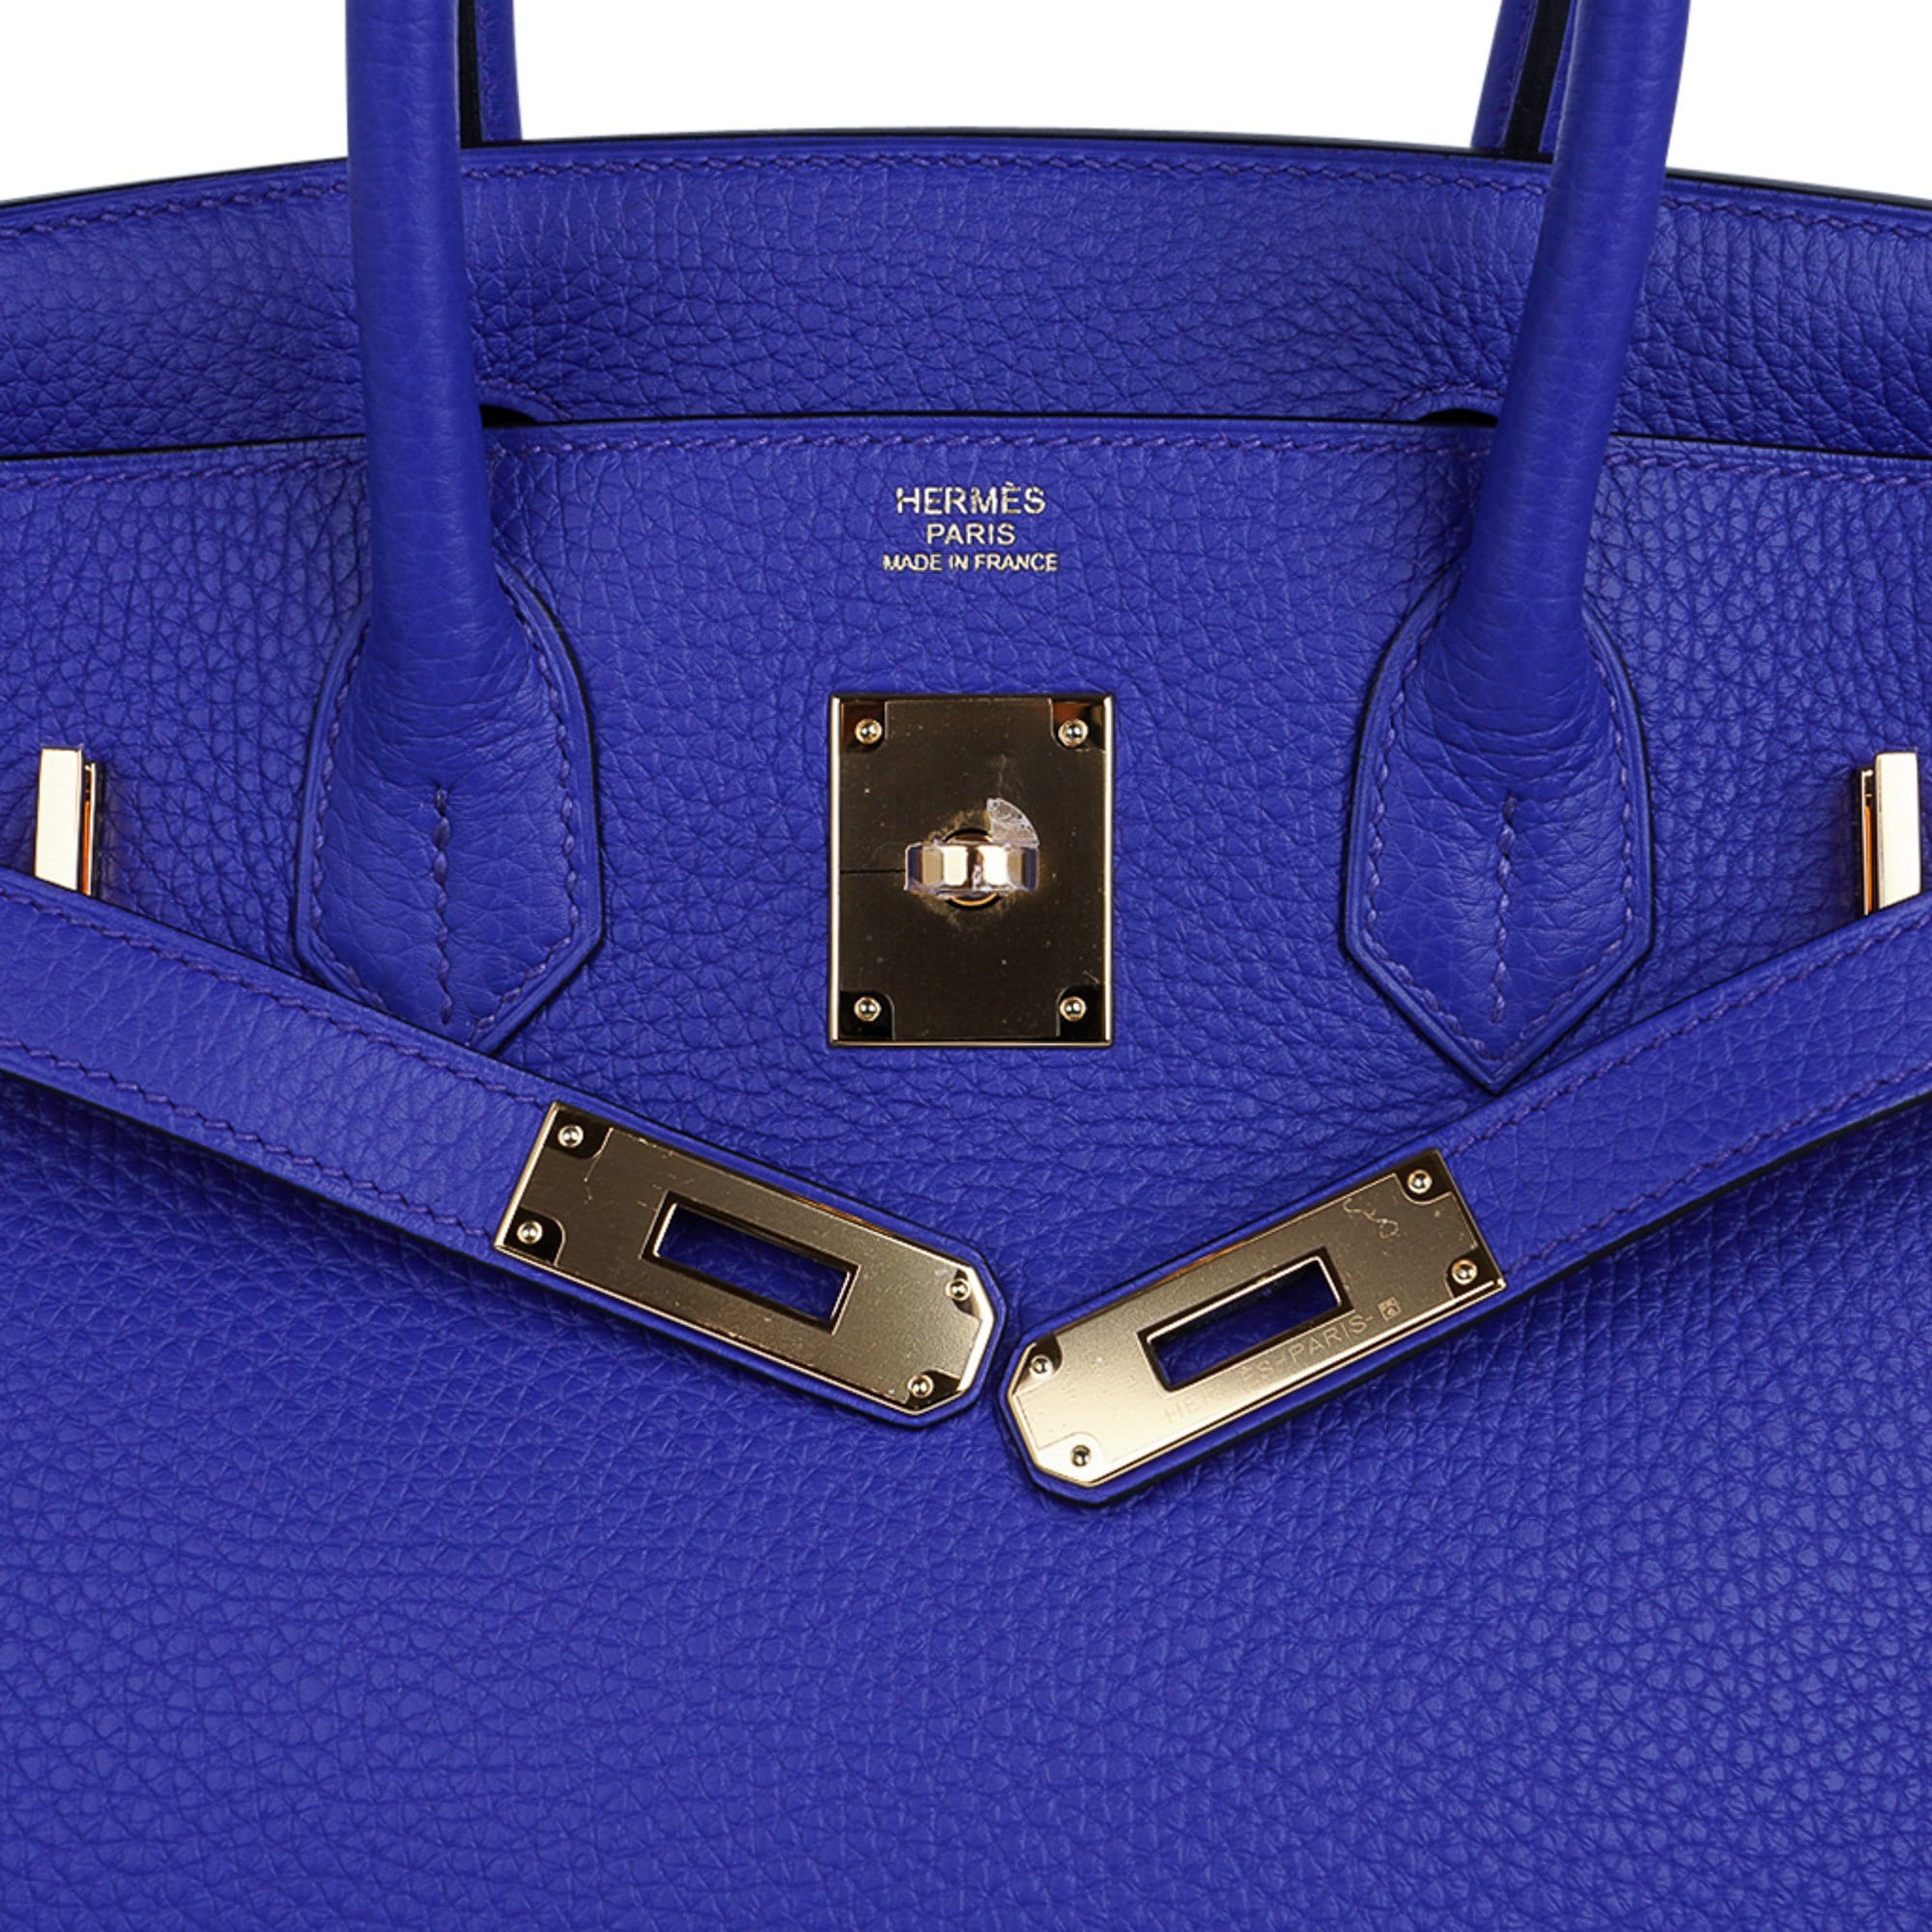 Hermes Birkin bag 30 Blue pale Clemence leather Gold hardware